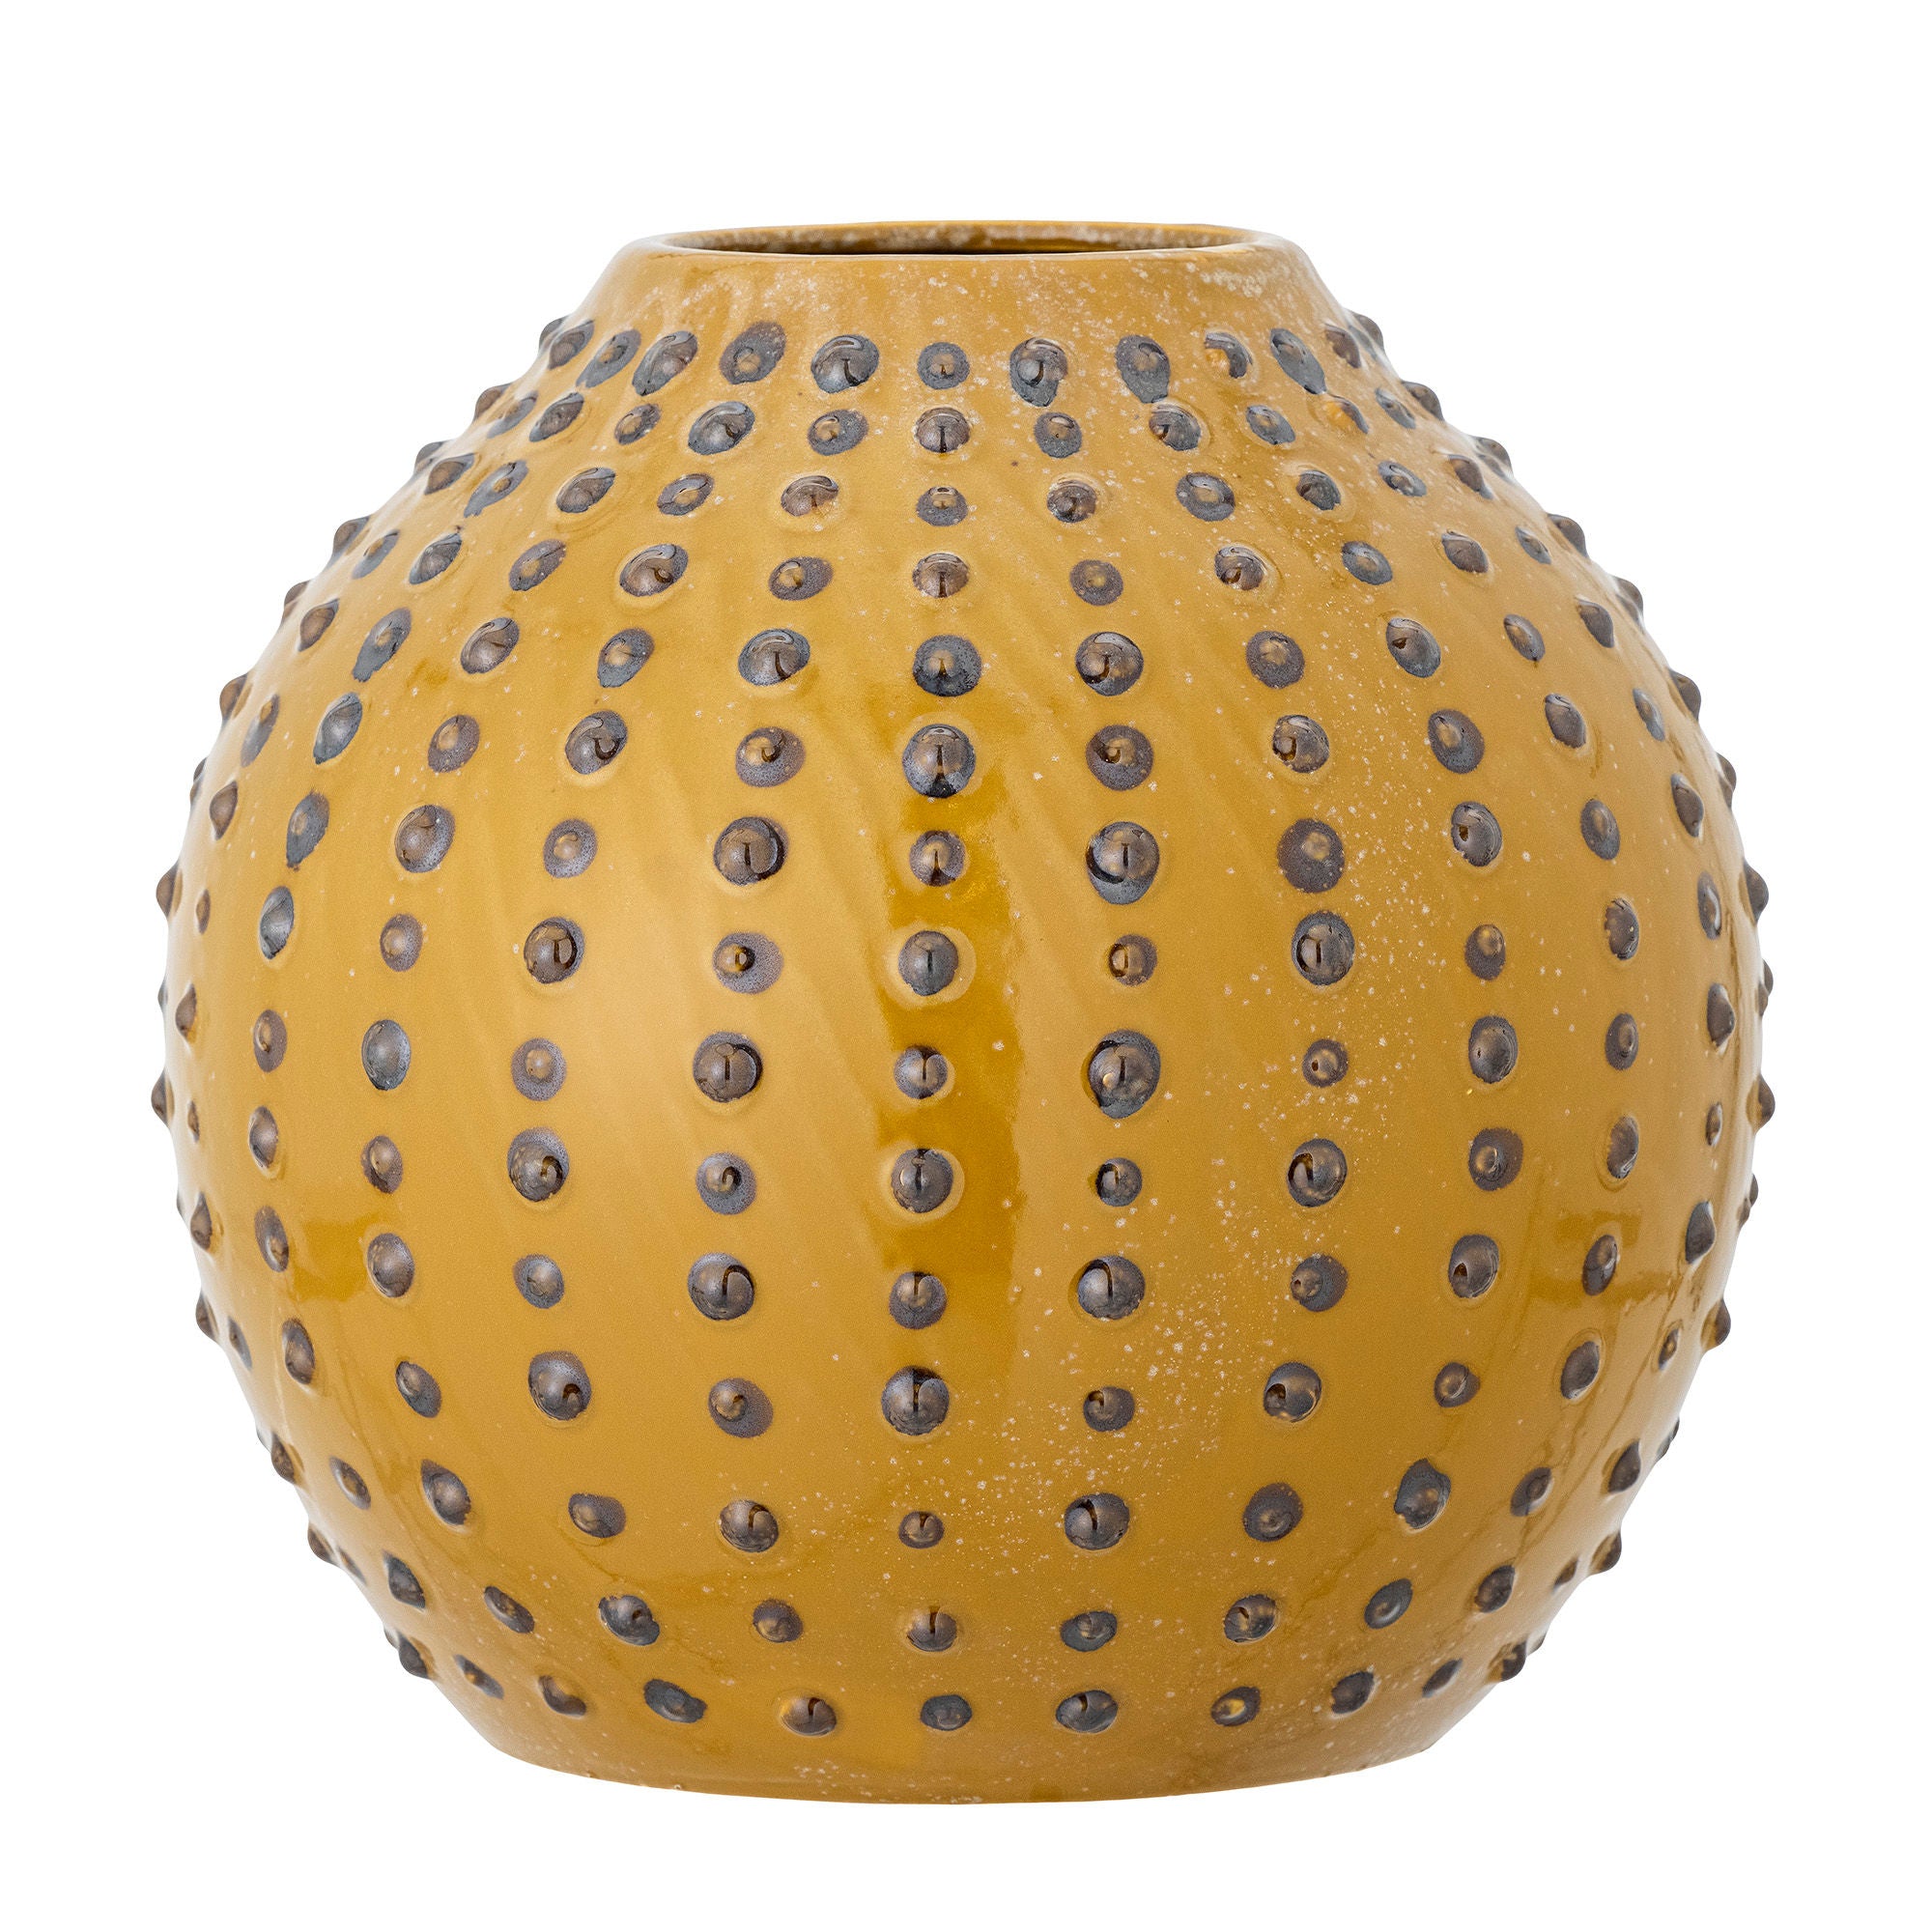 Die Toofan Vase aus der Creative Collection ist aus Steinzeug mit reaktiver Glasur in einer reizvollen braunen Farbe gefertigt und besticht durch ihre runde Form und kleinen Pünktchen.